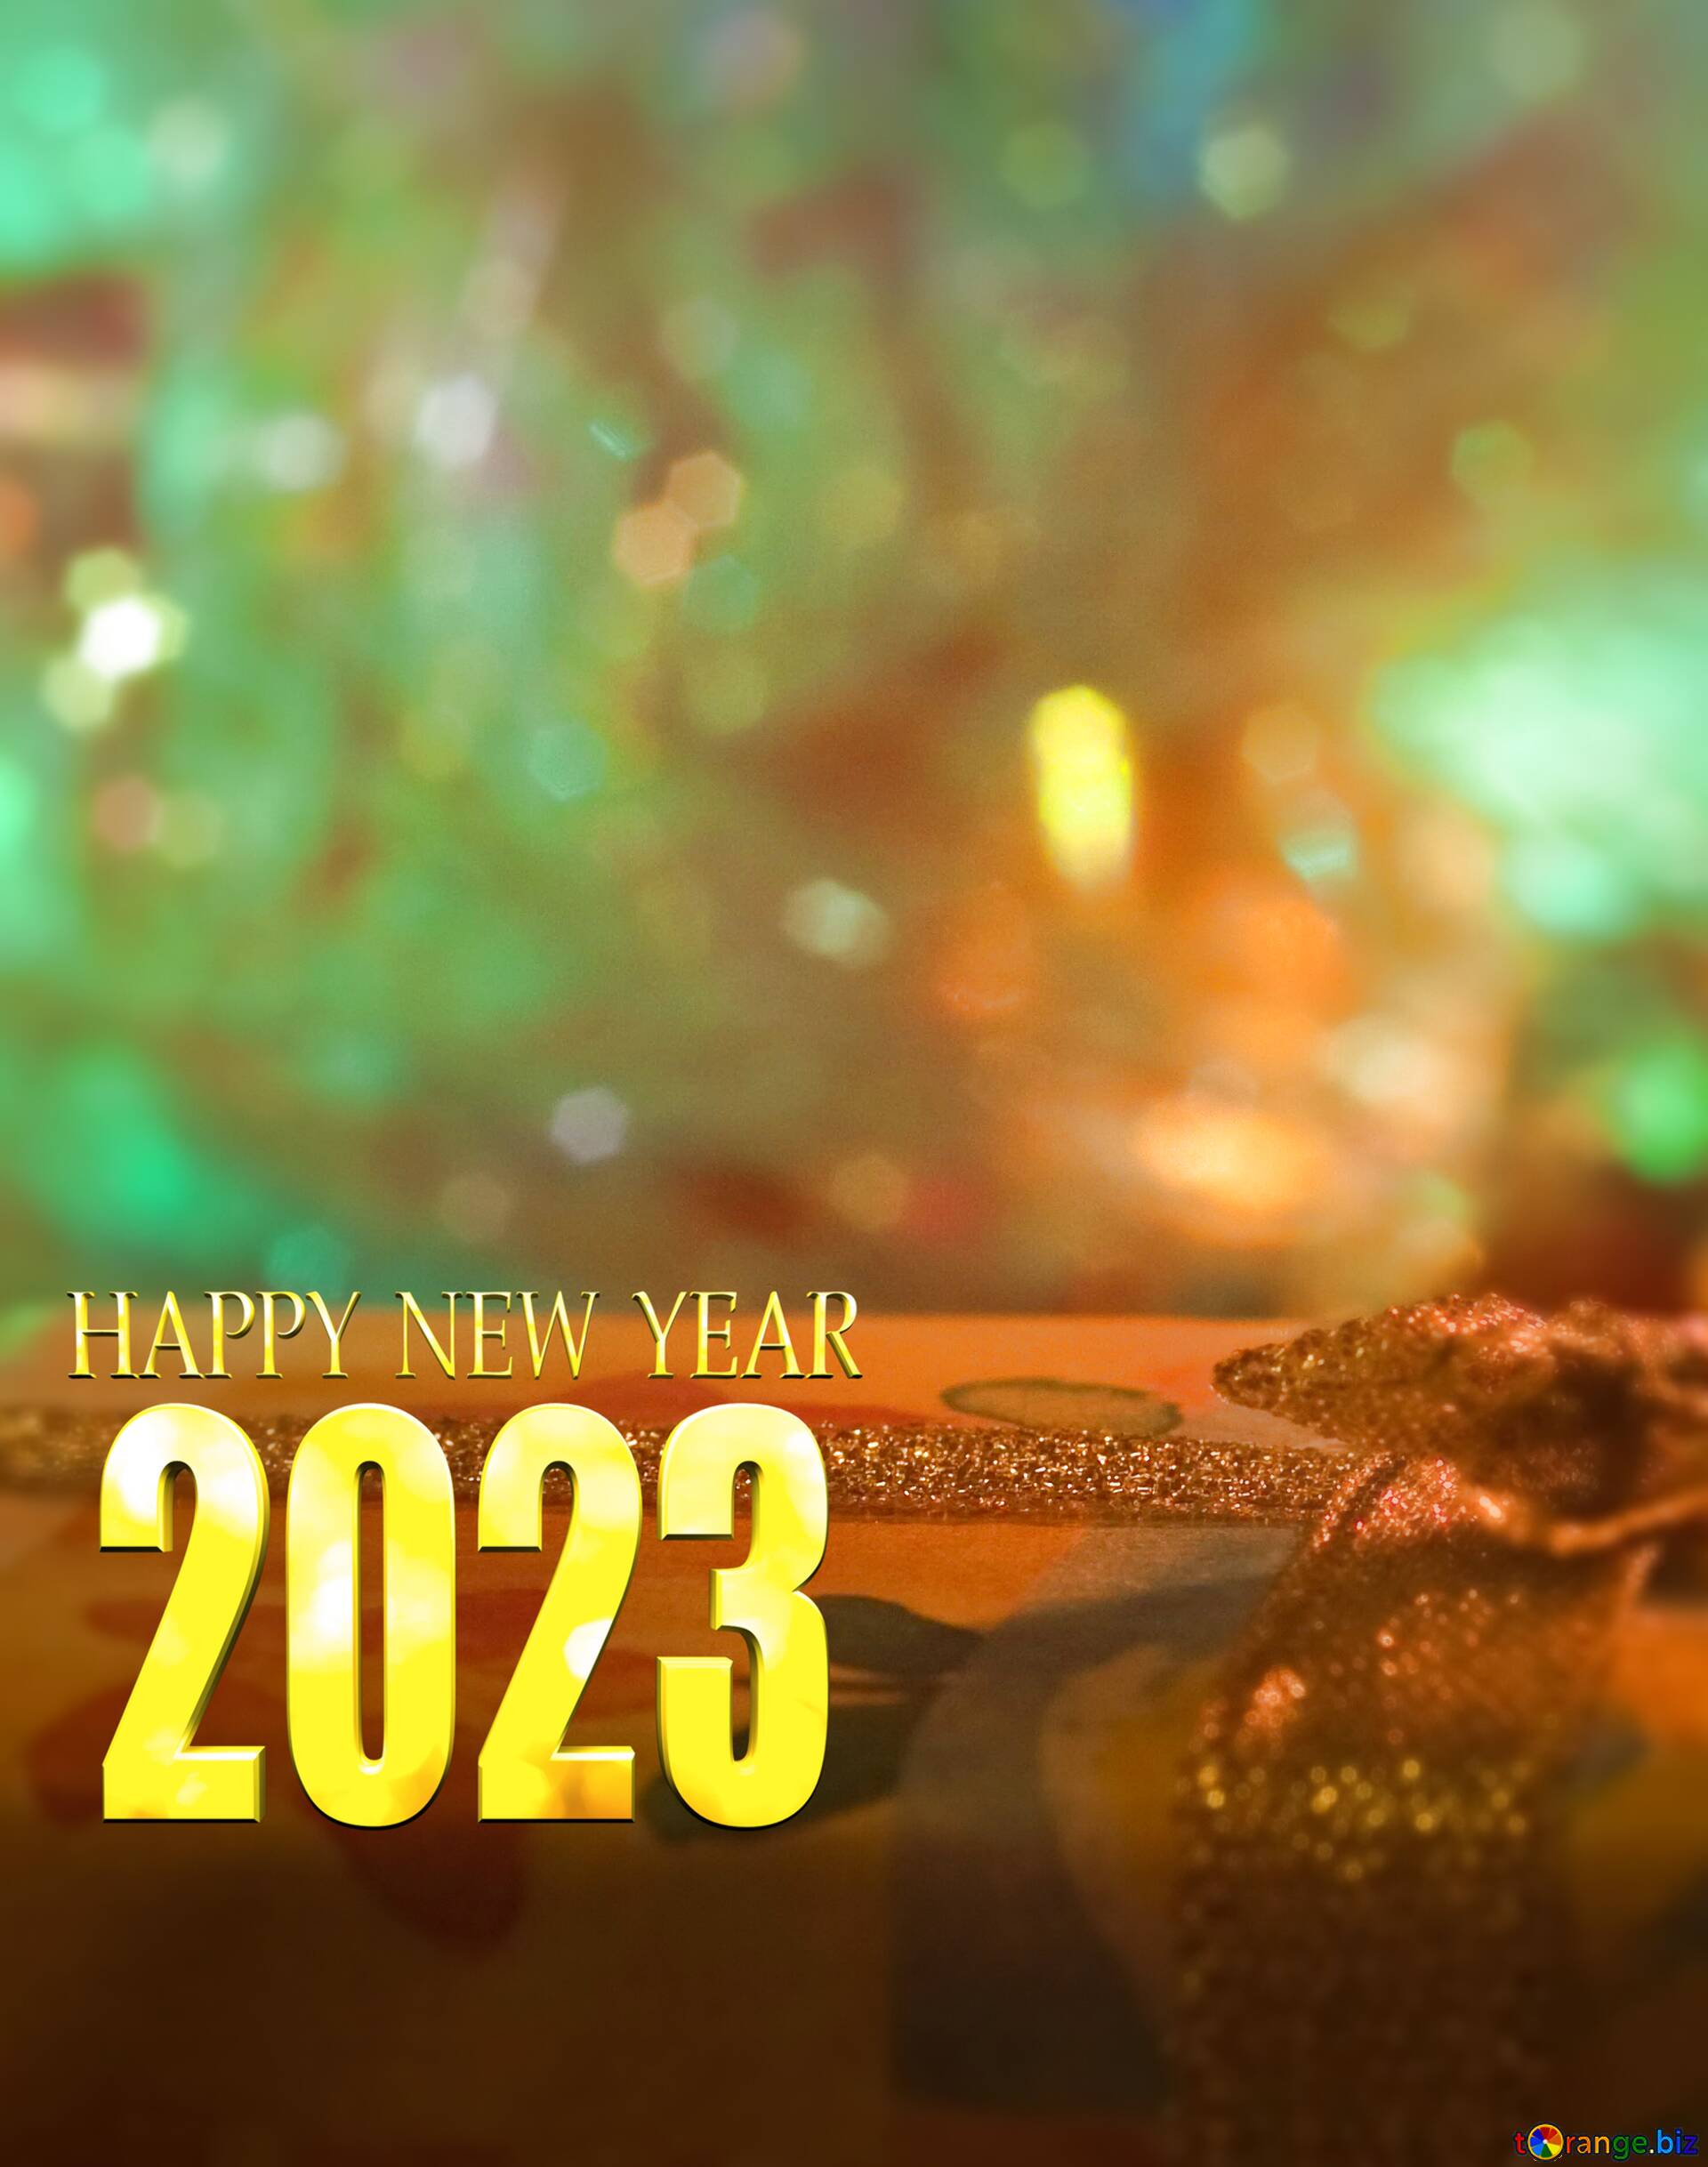 Navidad 2024 (Giáng sinh 2024): Chào đón năm 2024 với những bức ảnh đầy màu sắc, phấn khởi và nhiệt huyết của ngày Giáng sinh. Tận hưởng không khí lễ hội, các màn trình diễn và các hoạt động thú vị với gia đình và bạn bè, tất cả sẽ chỉ còn nằm trong tầm tay của bạn khi đến với những bức ảnh tuyệt đẹp này.